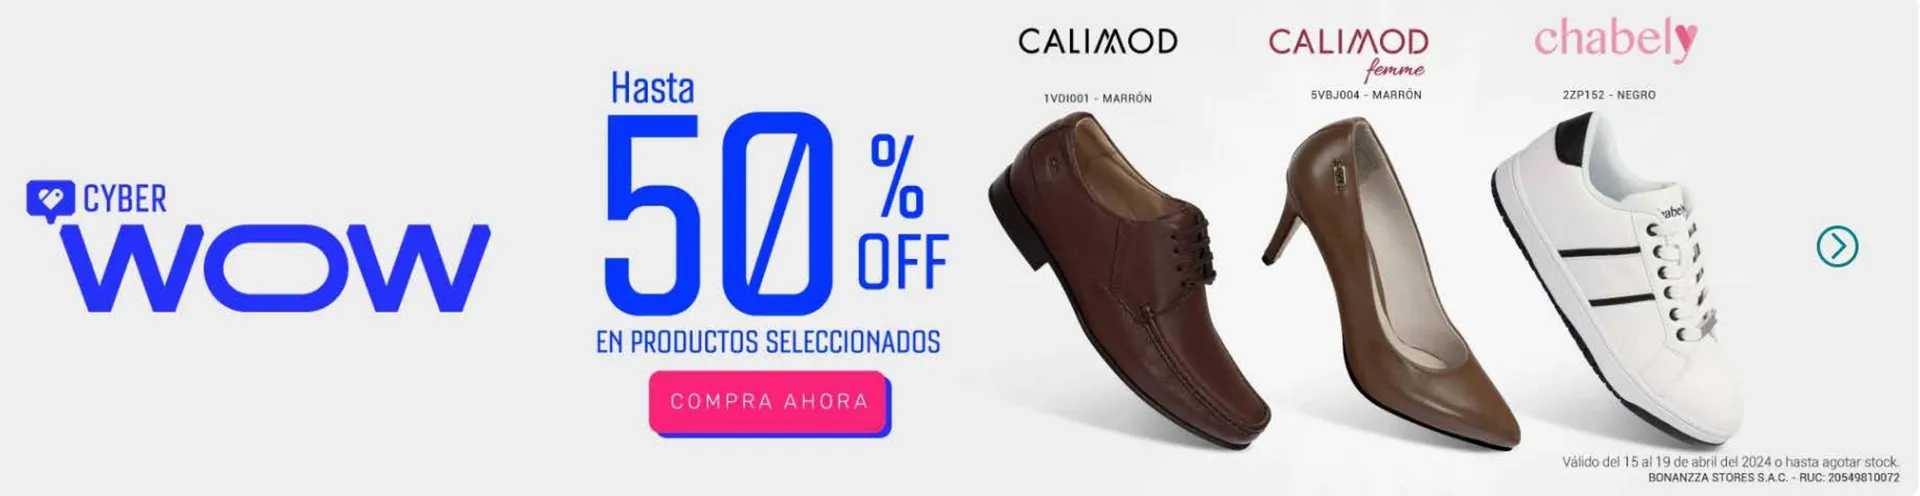 Catálogo CaliMod - 1